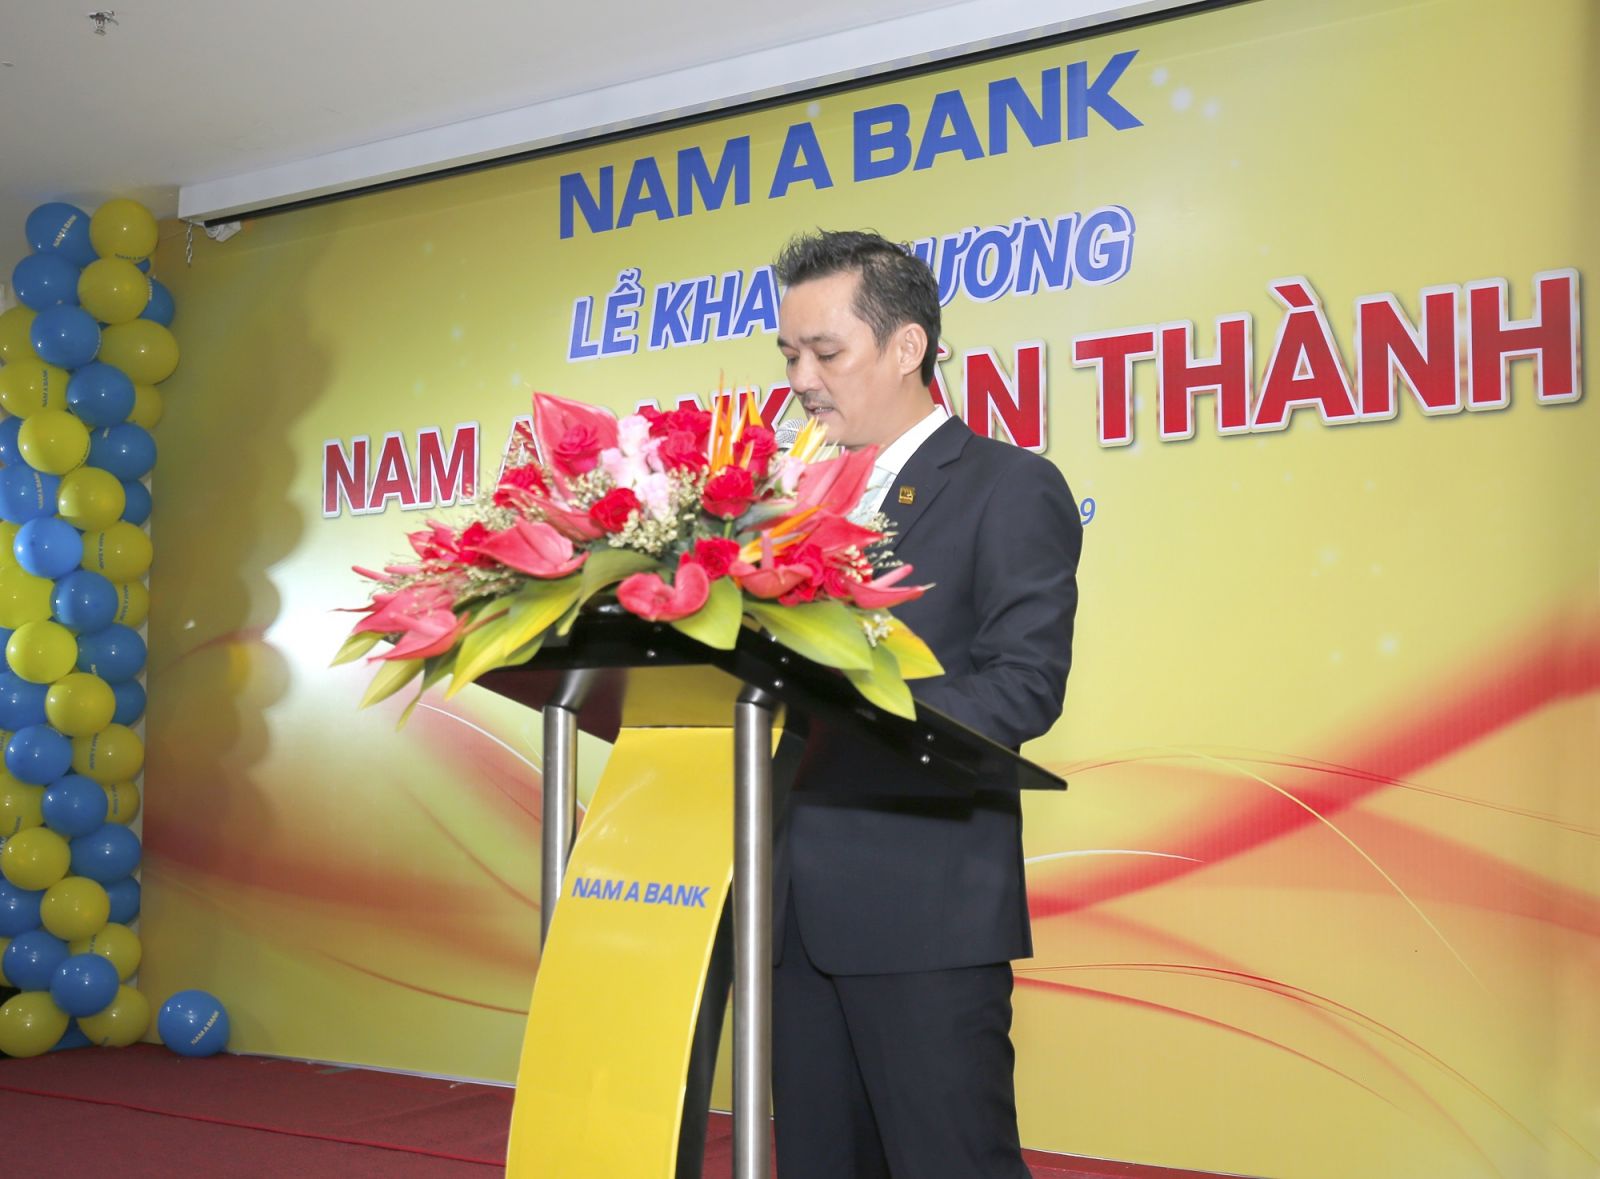 Ông Nguyễn Duy Phương – Phó Giám đốc Nam A Bank khu vực miền Đông Nam Bộ phát biểu tại Lễ khai trương Nam A Bank Tân Thành - Bà Rịa Vũng Tàu.